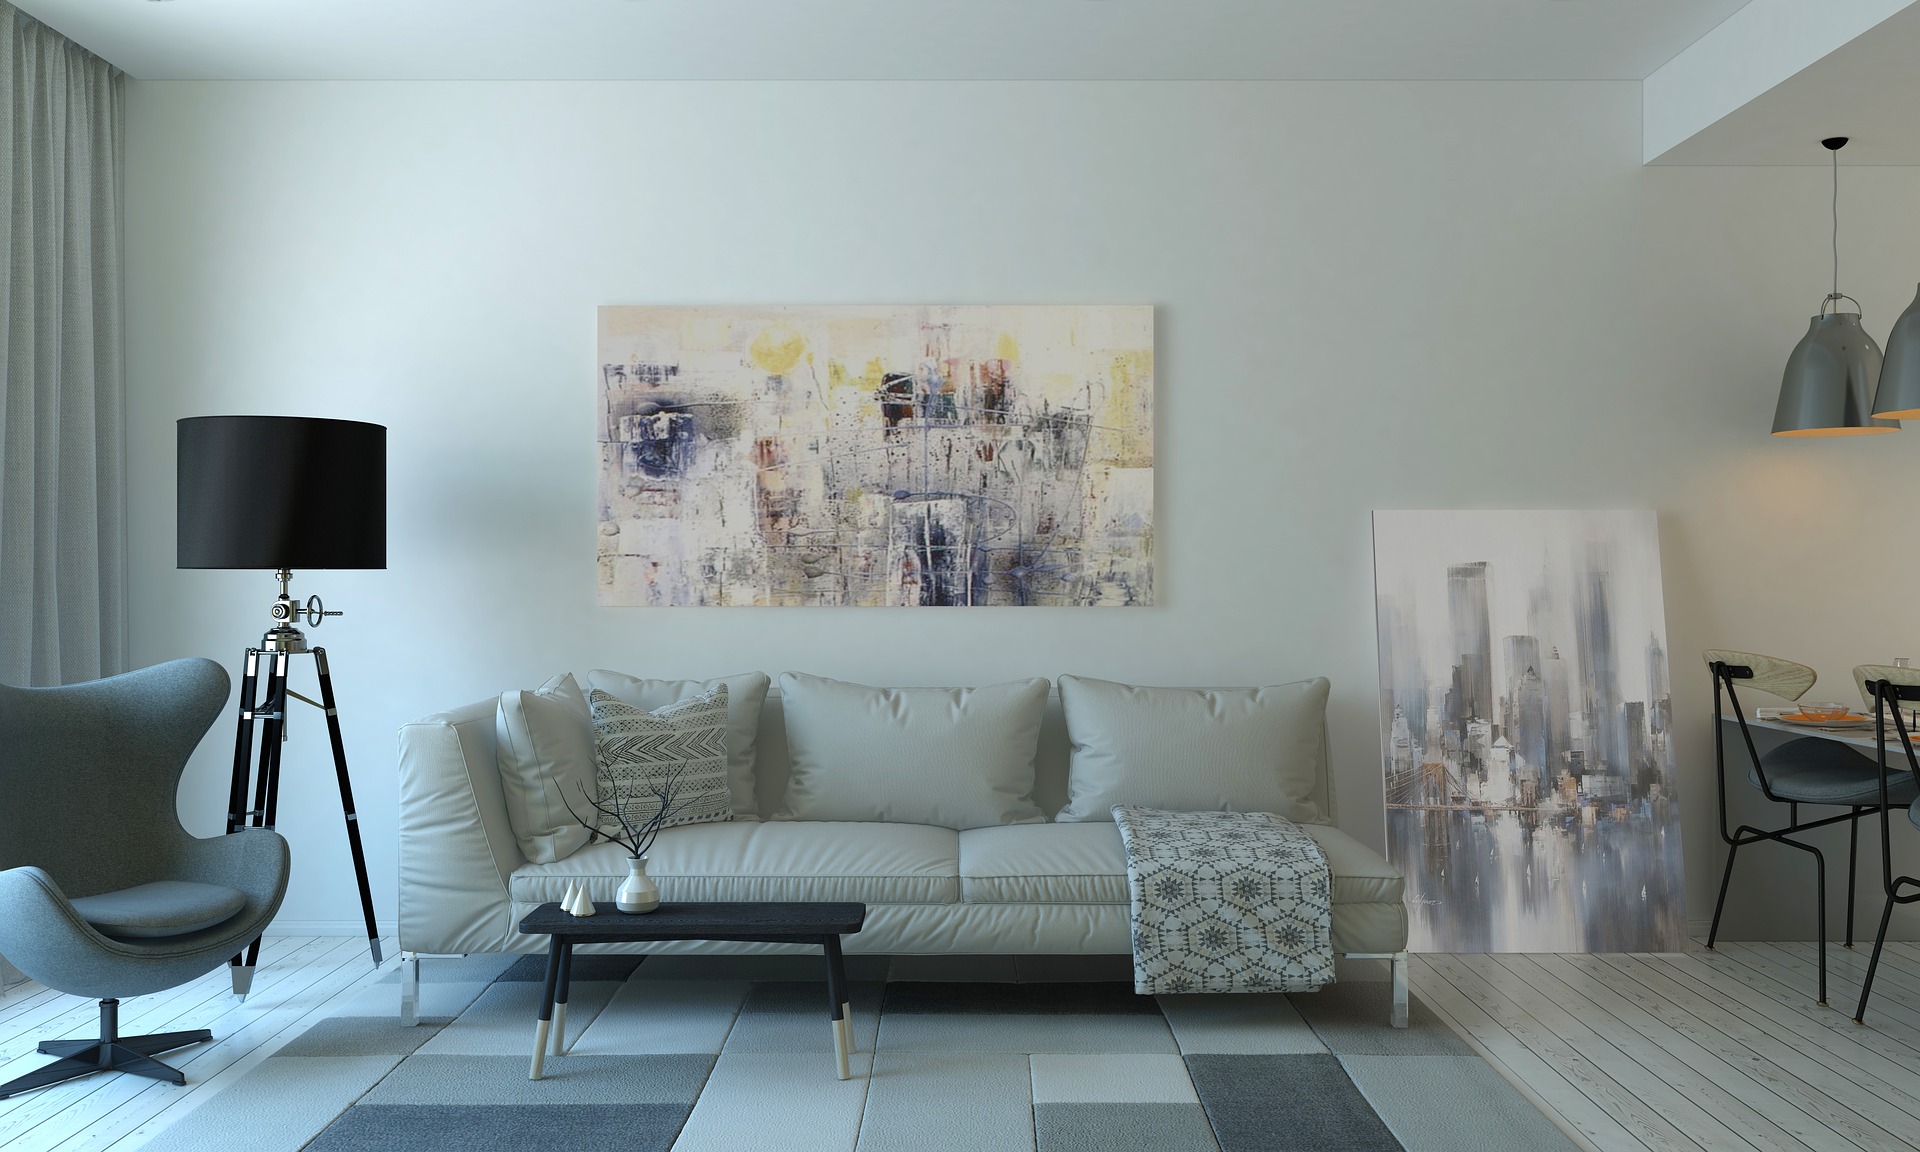 moderná a dizajnová obývacia miestnosť s trendy prvkami